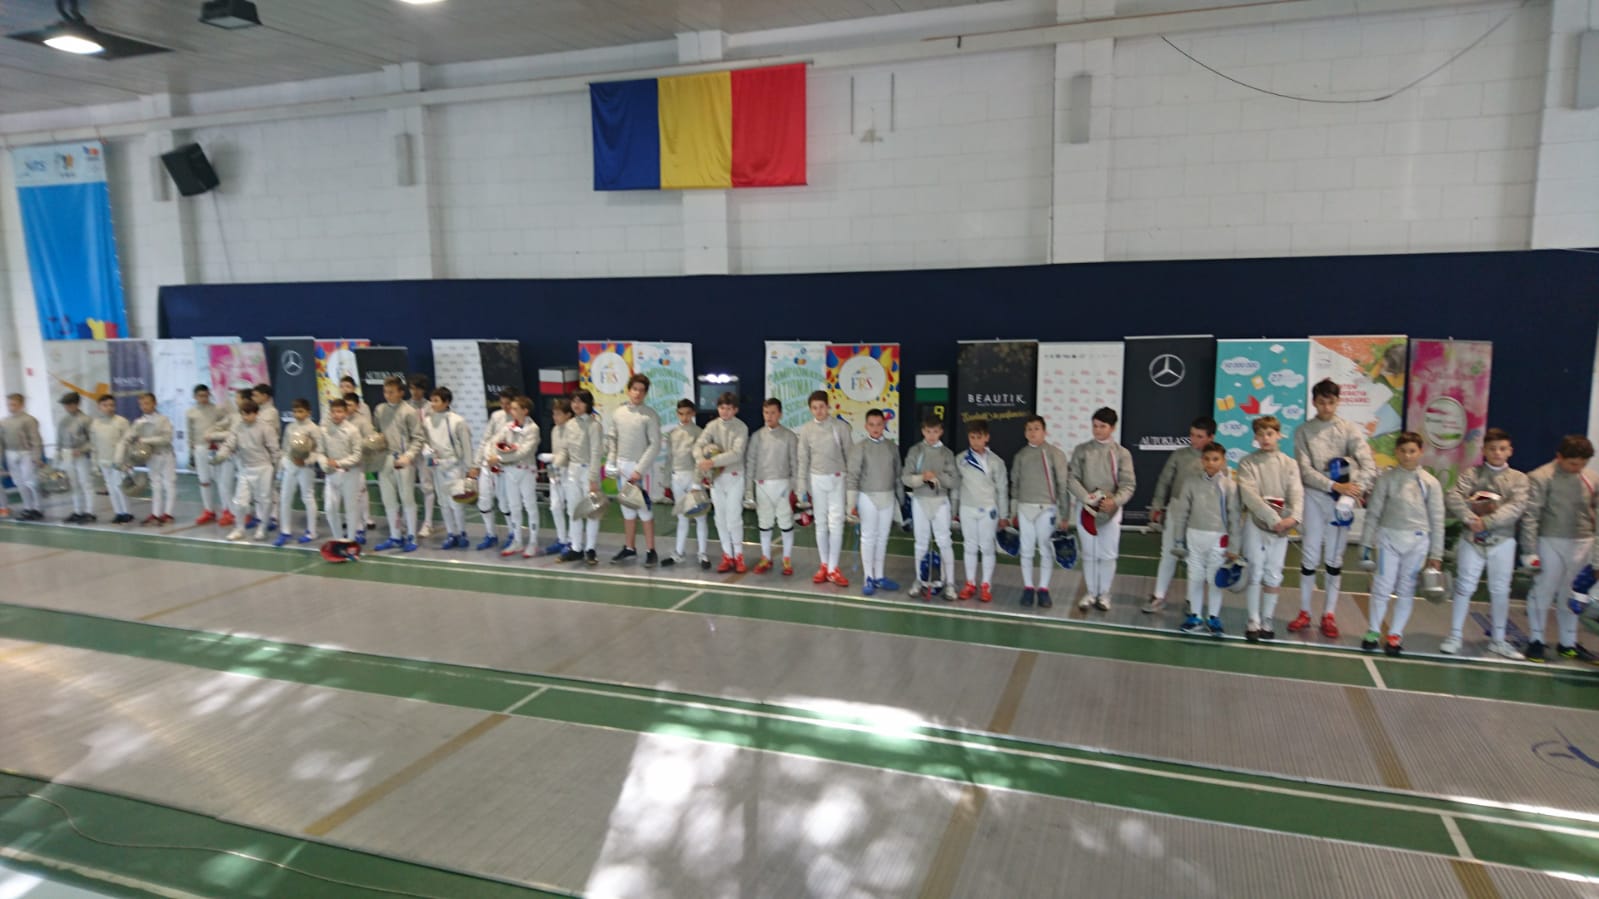 LIVE: Campionatul Național de scrimă pentru copii de la București, ediția 2018, ziua 9: azi au loc probele de sabie masculin la 12-13 ani și 10-11 ani